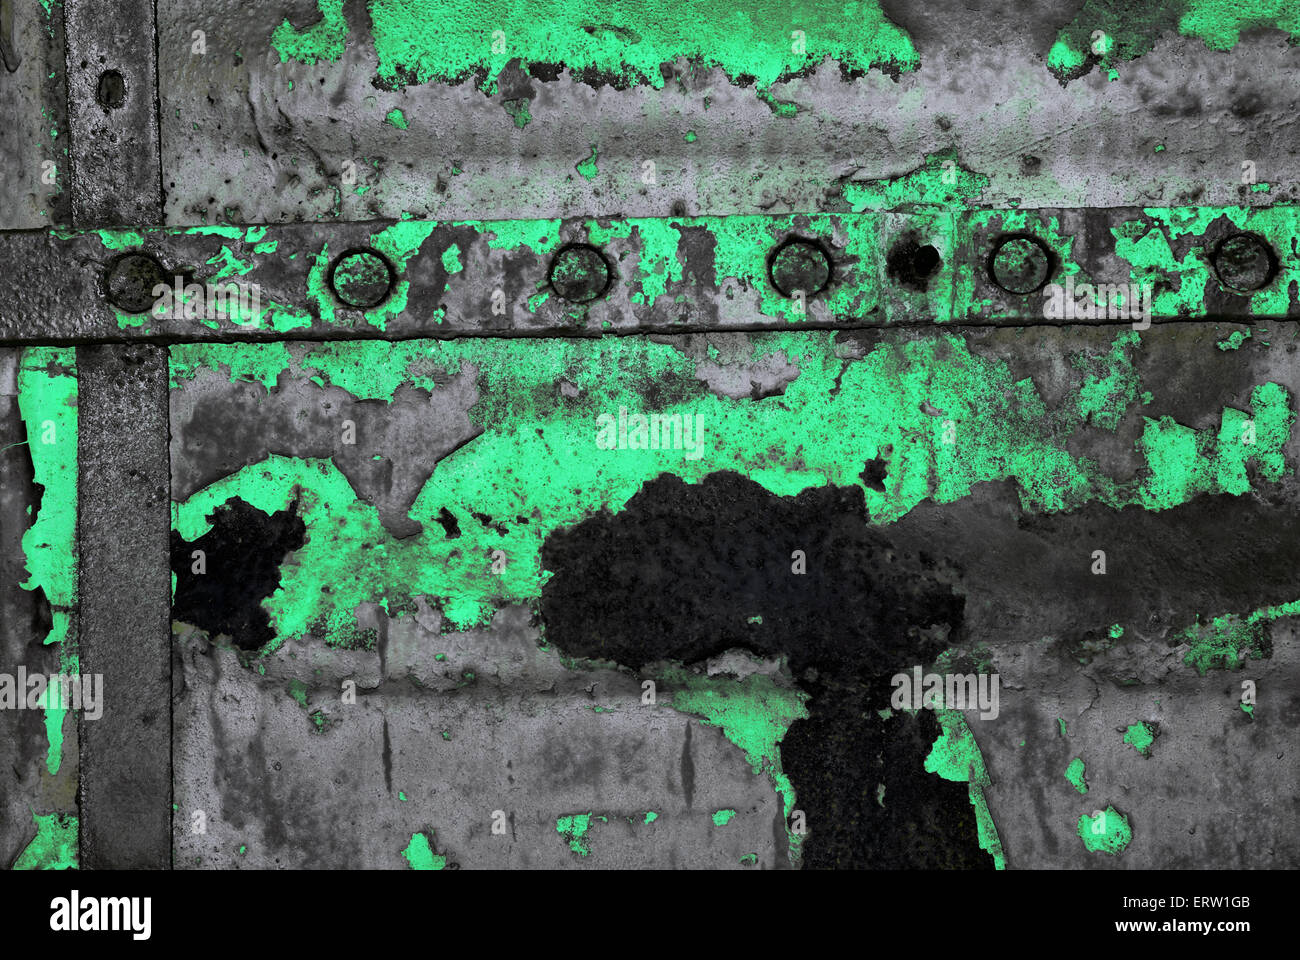 Hintergrund im giftigen Stil auf einer Metalloberfläche Stockfoto